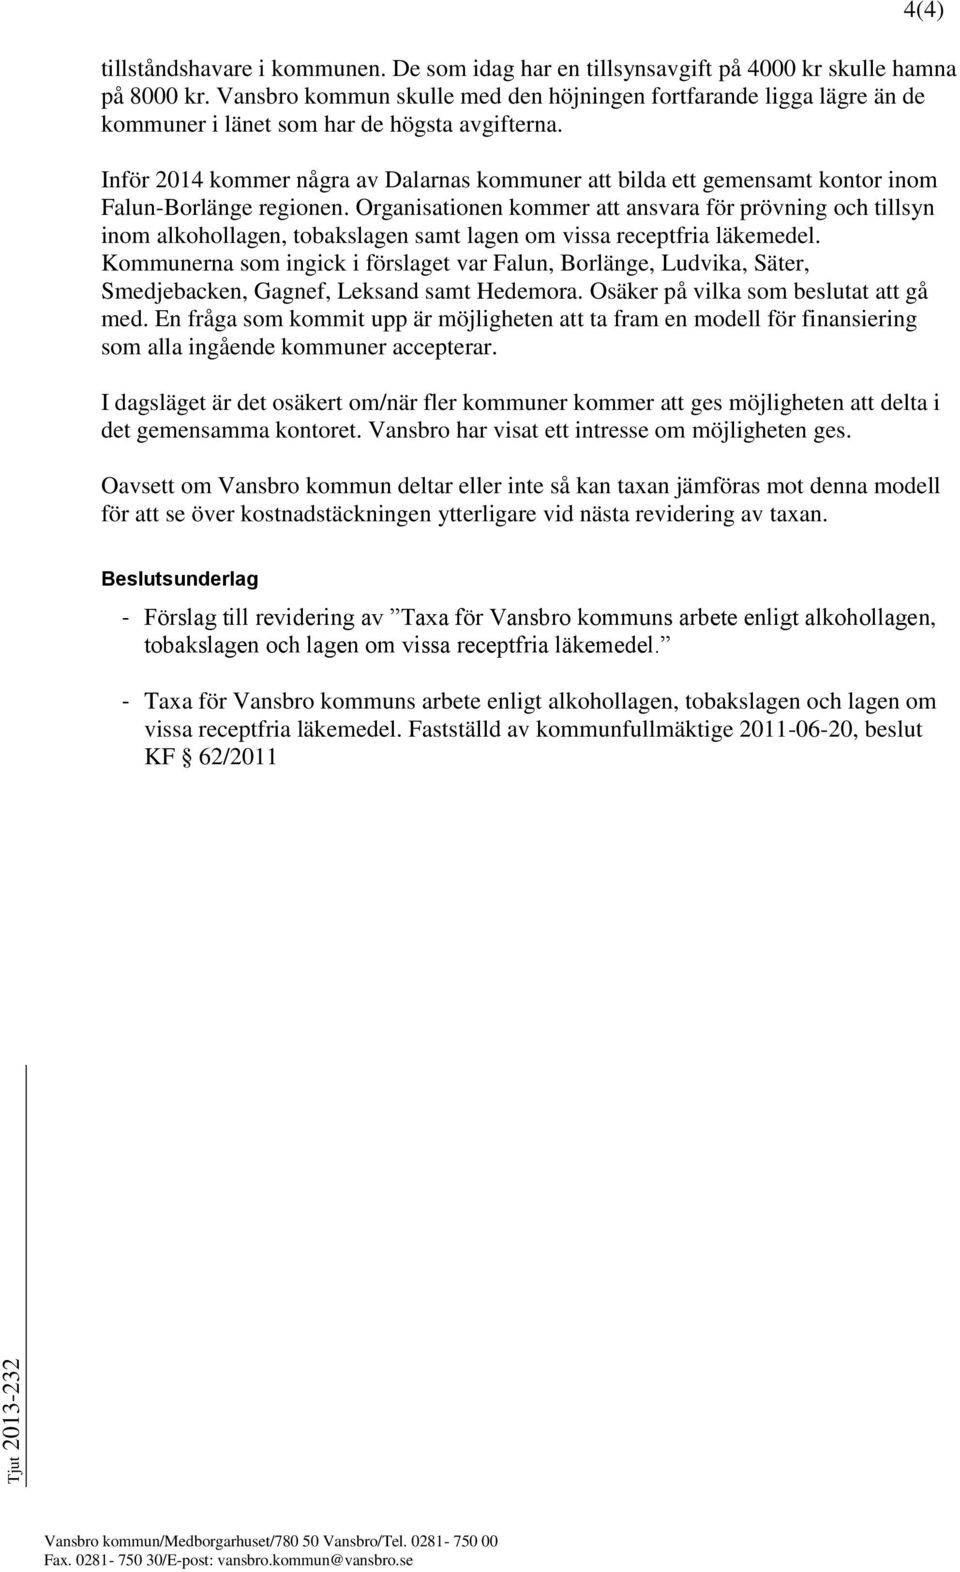 Inför 2014 kommer några av Dalarnas kommuner att bilda ett gemensamt kontor inom Falun-Borlänge regionen.